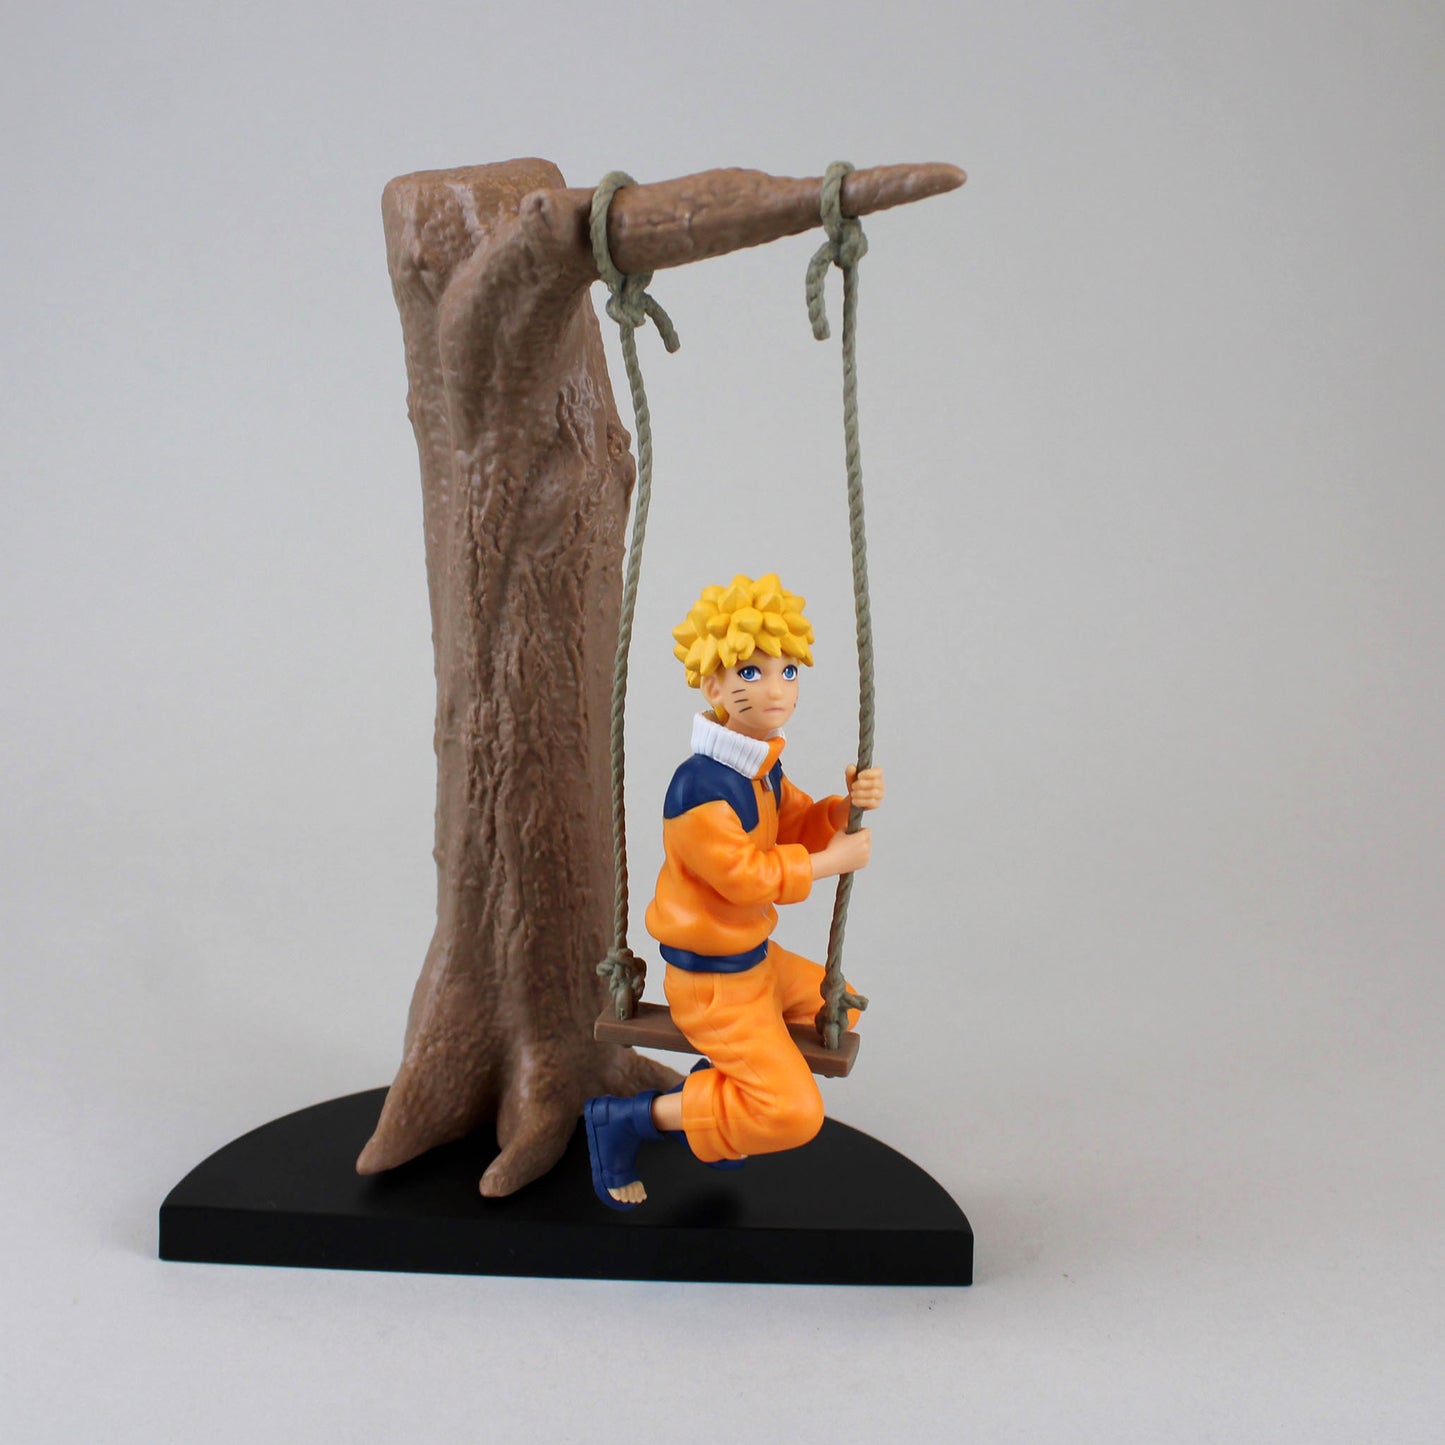 Naruto Uzumaki Model Statue Action Figure Figurine Naruto